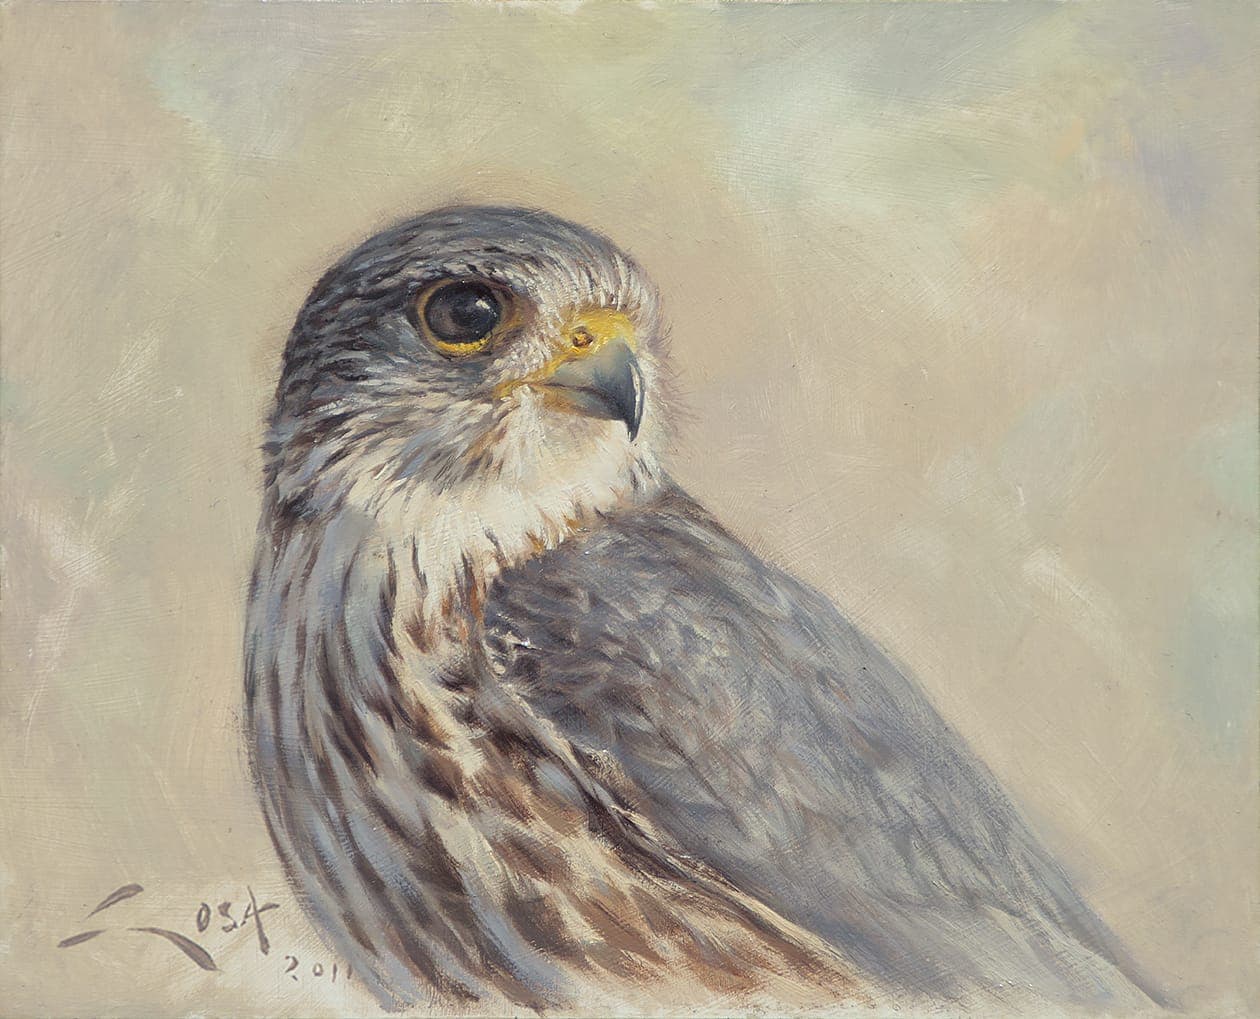 Cuadro de un Esmerejón (Falco columbarius)